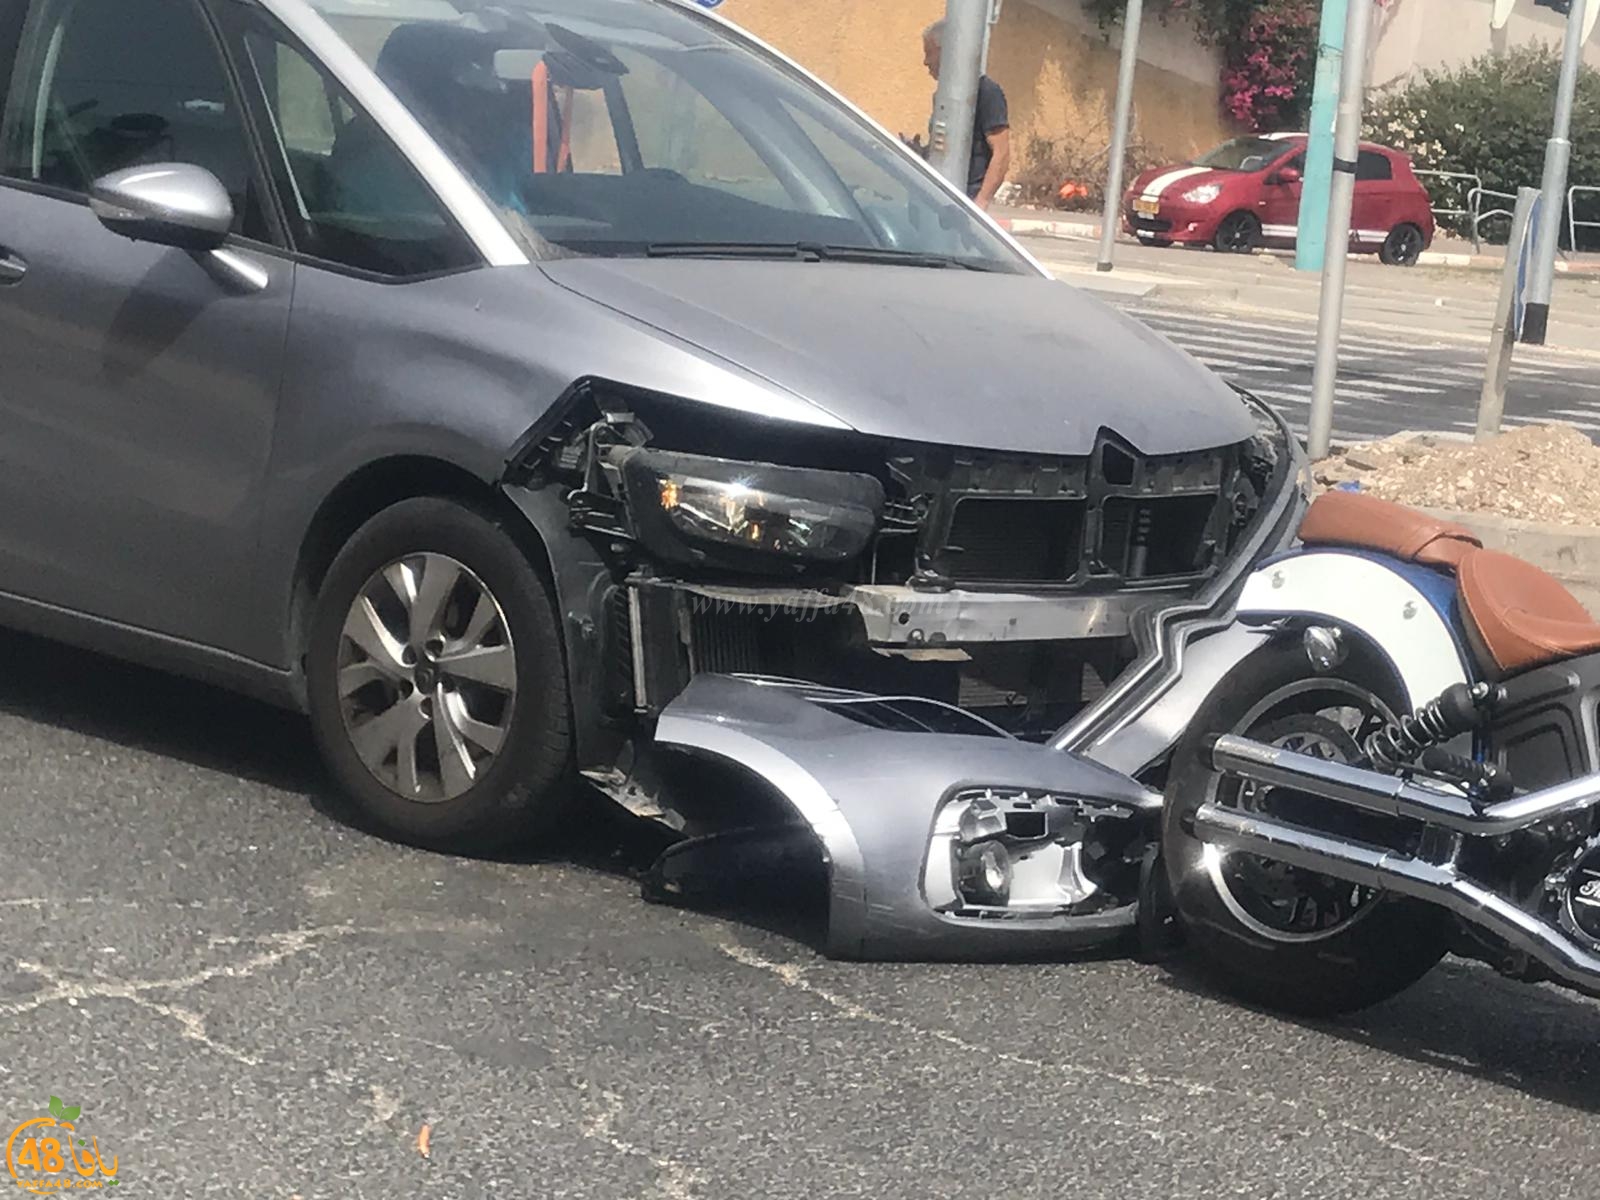   اصابة طفيفة لراكب دراجة بحادث طرق في مفرق فولفسون بيافا